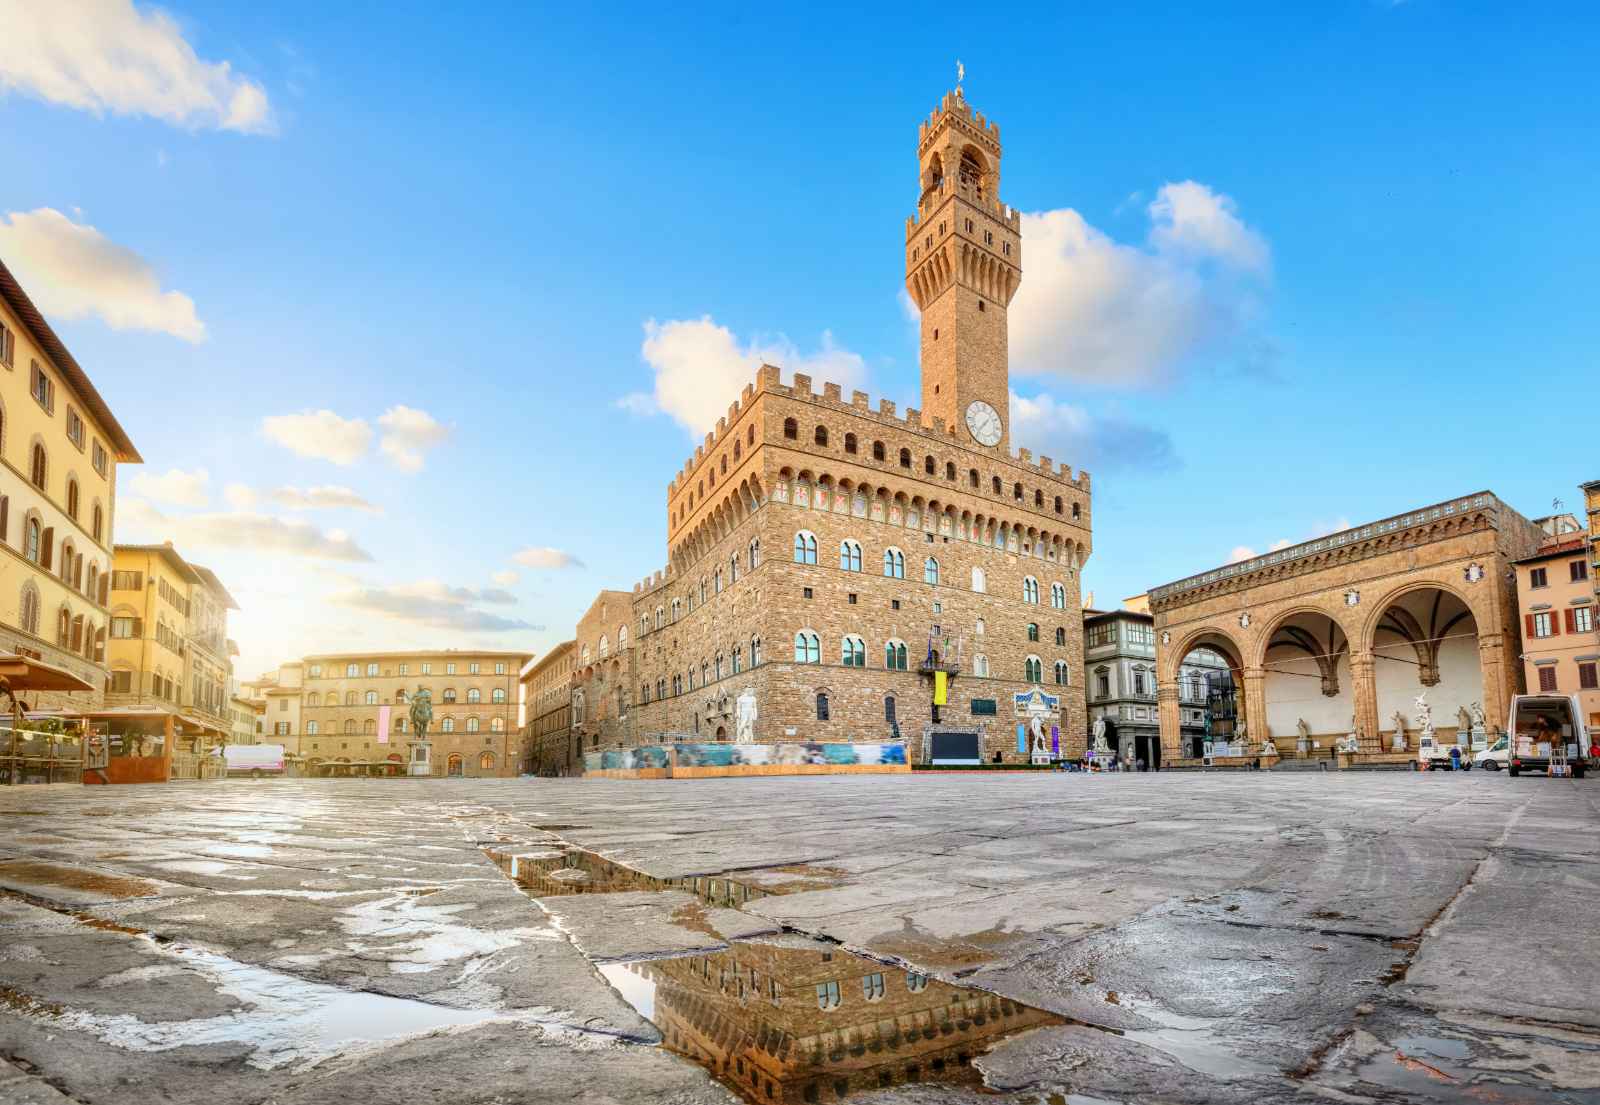 Florence in One Day Morning Piazza della Signoria and Palazzo Vecchio